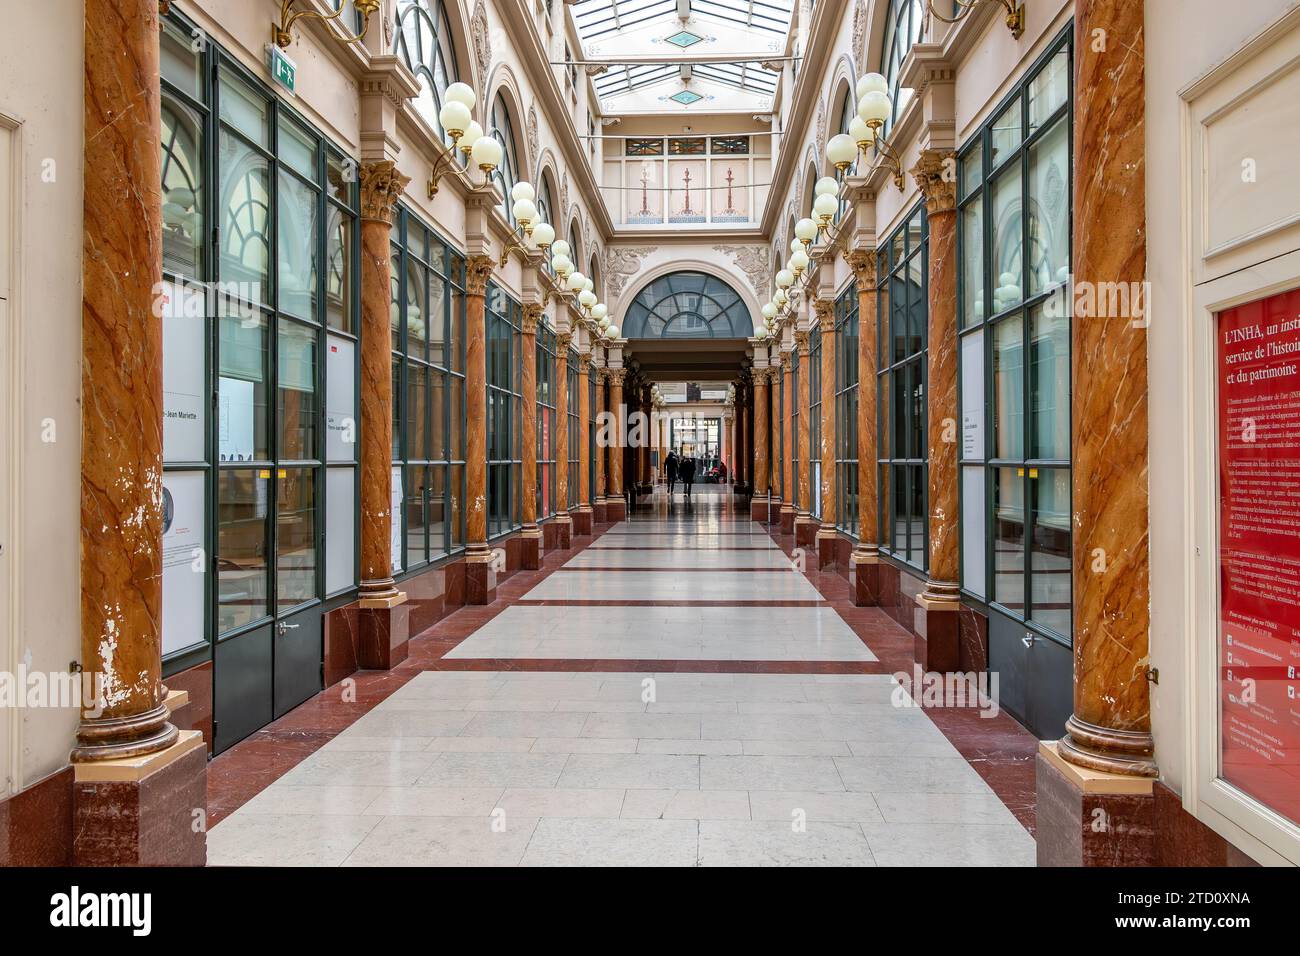 All'interno della Galerie Colbert , questo portico coperto appartiene alla Bibliothèque Nationale, e a differenza di altri portici parigini, non ci sono negozi, Parigi Foto Stock